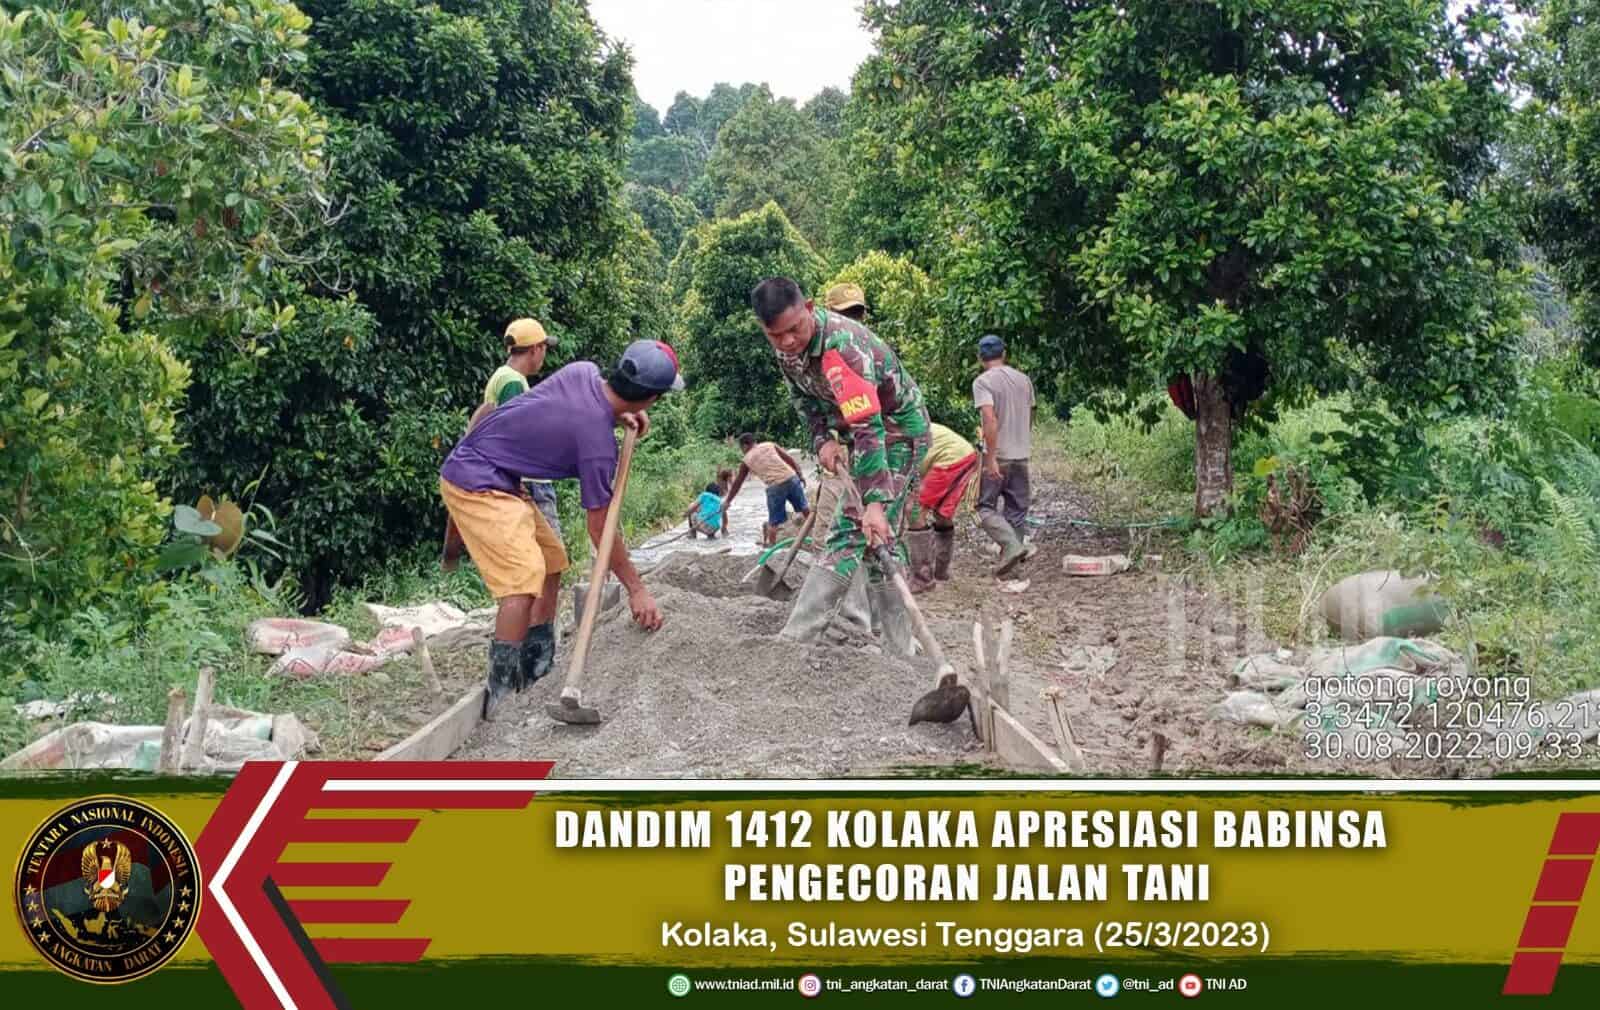 Dandim 1412/Kolaka Apresiasi Babinsa Bersama Masyarakat Karya Bakti Pengecoran Jalan Tani